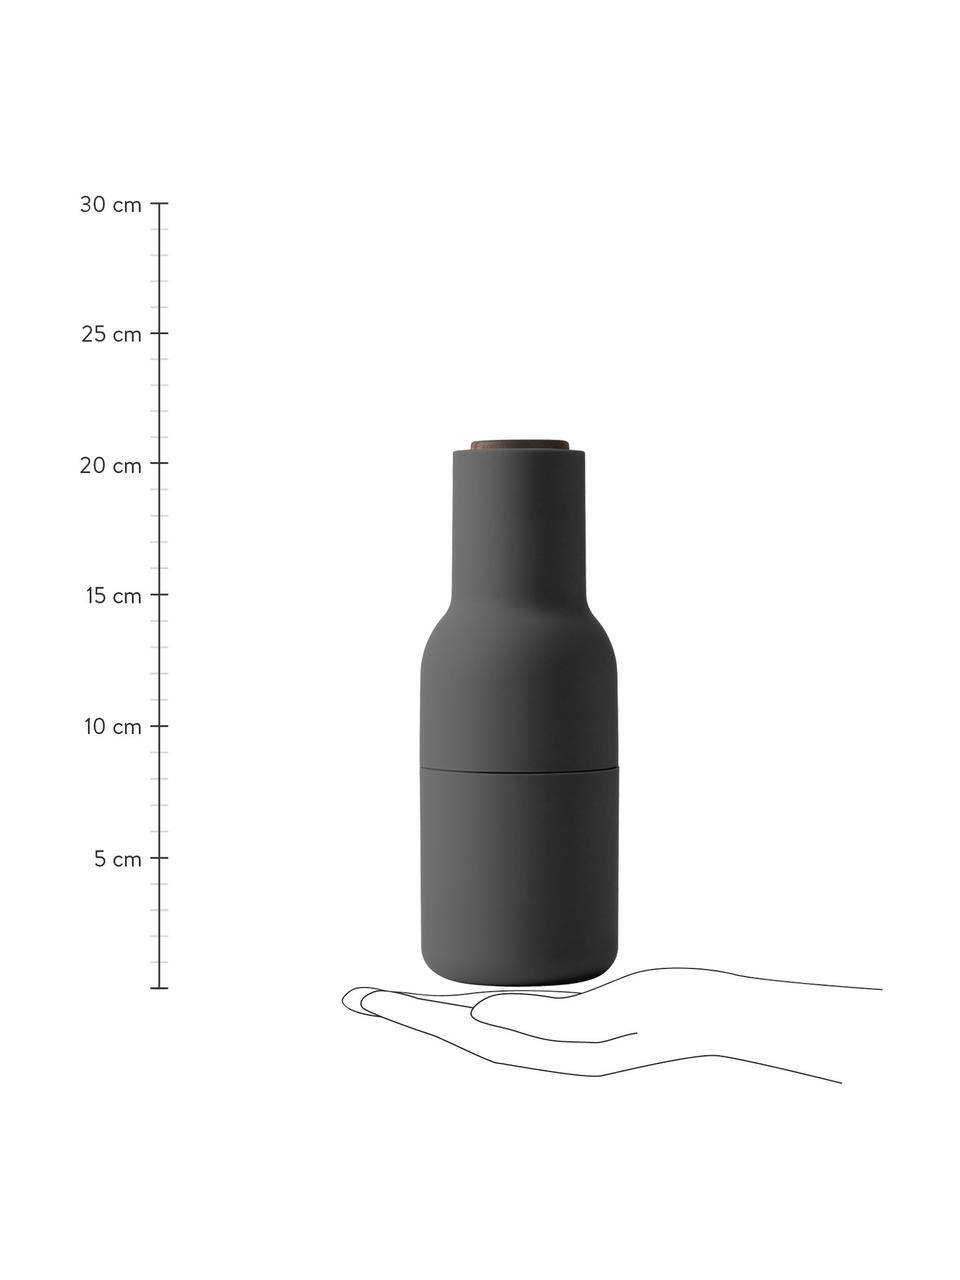 Design zout- & pepermolen Bottle Grinder met walnoothouten dop, Frame: kunststof, Deksel: walnoothout, Antraciet, wit, Ø 8 x H 21 cm